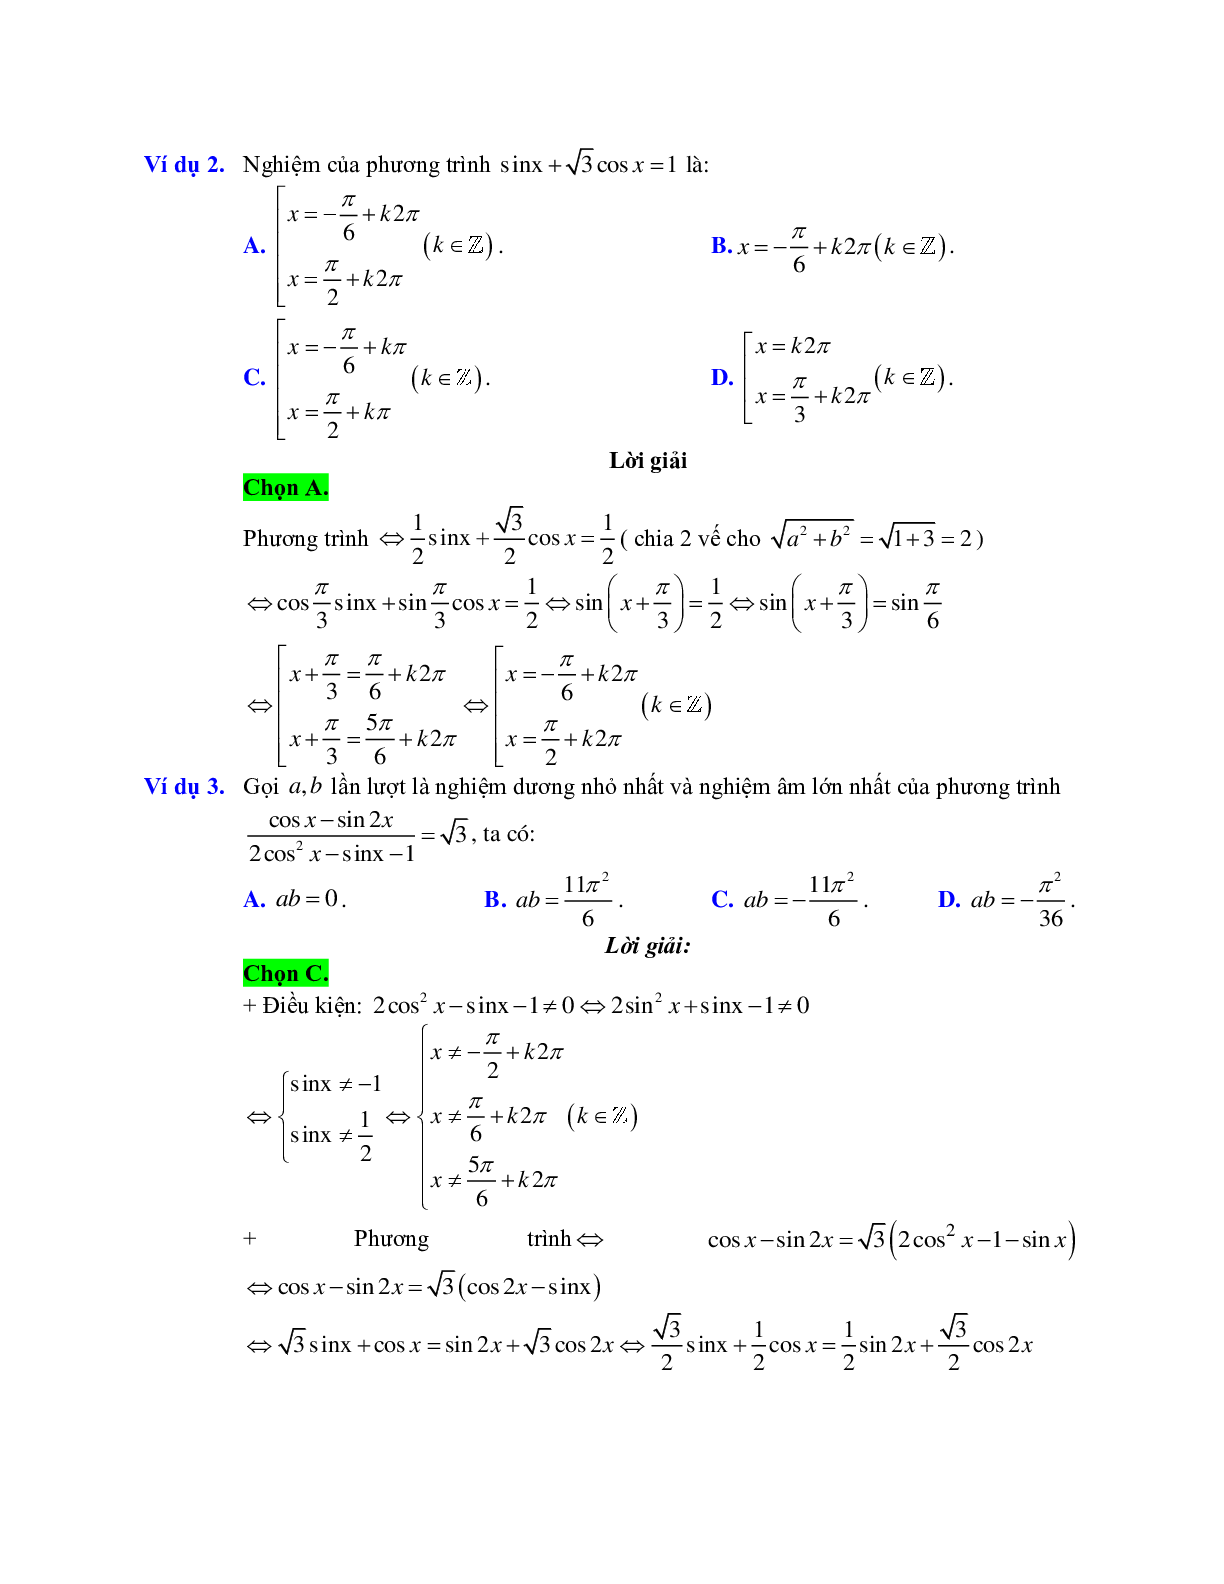 Cách giải phương trình bậc nhất đối với sinx, cosx (trang 2)